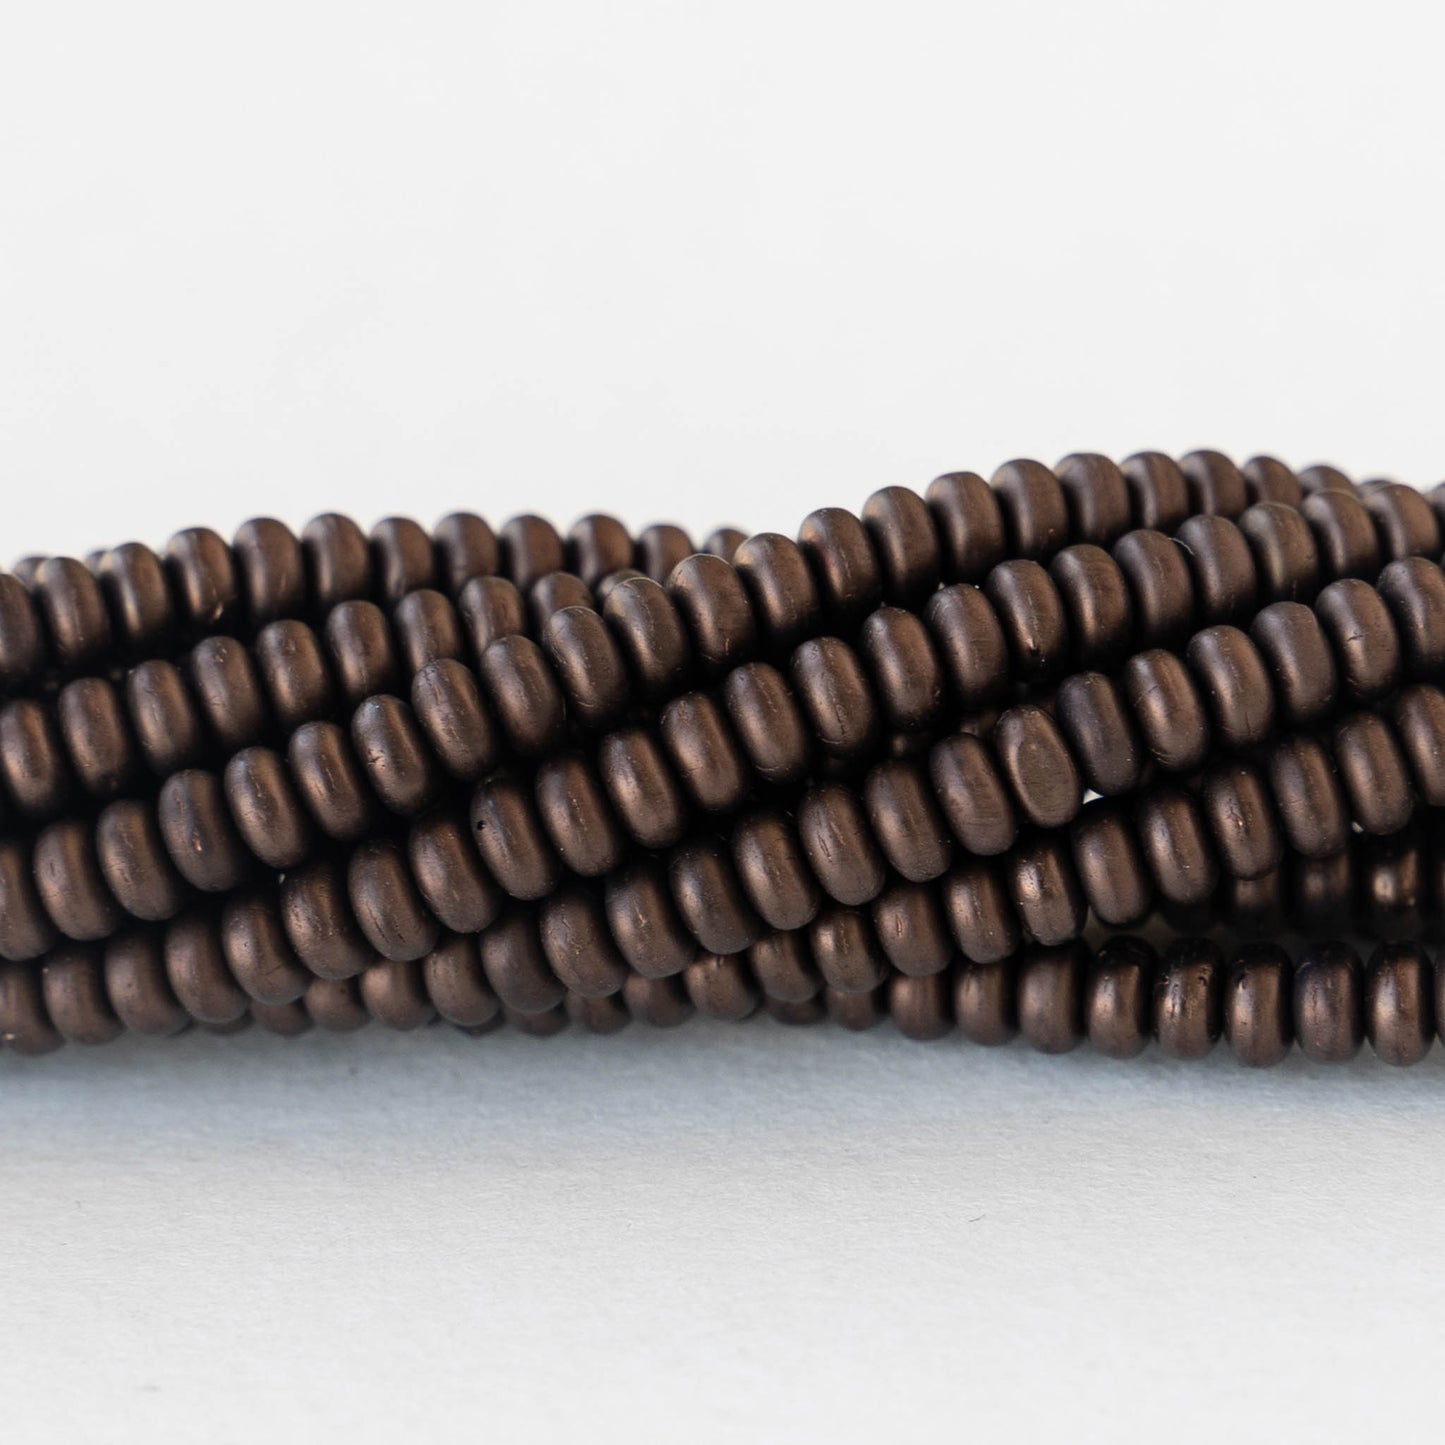 3mm Rondelle Beads - Dark Bronze Matte - 100 Beads